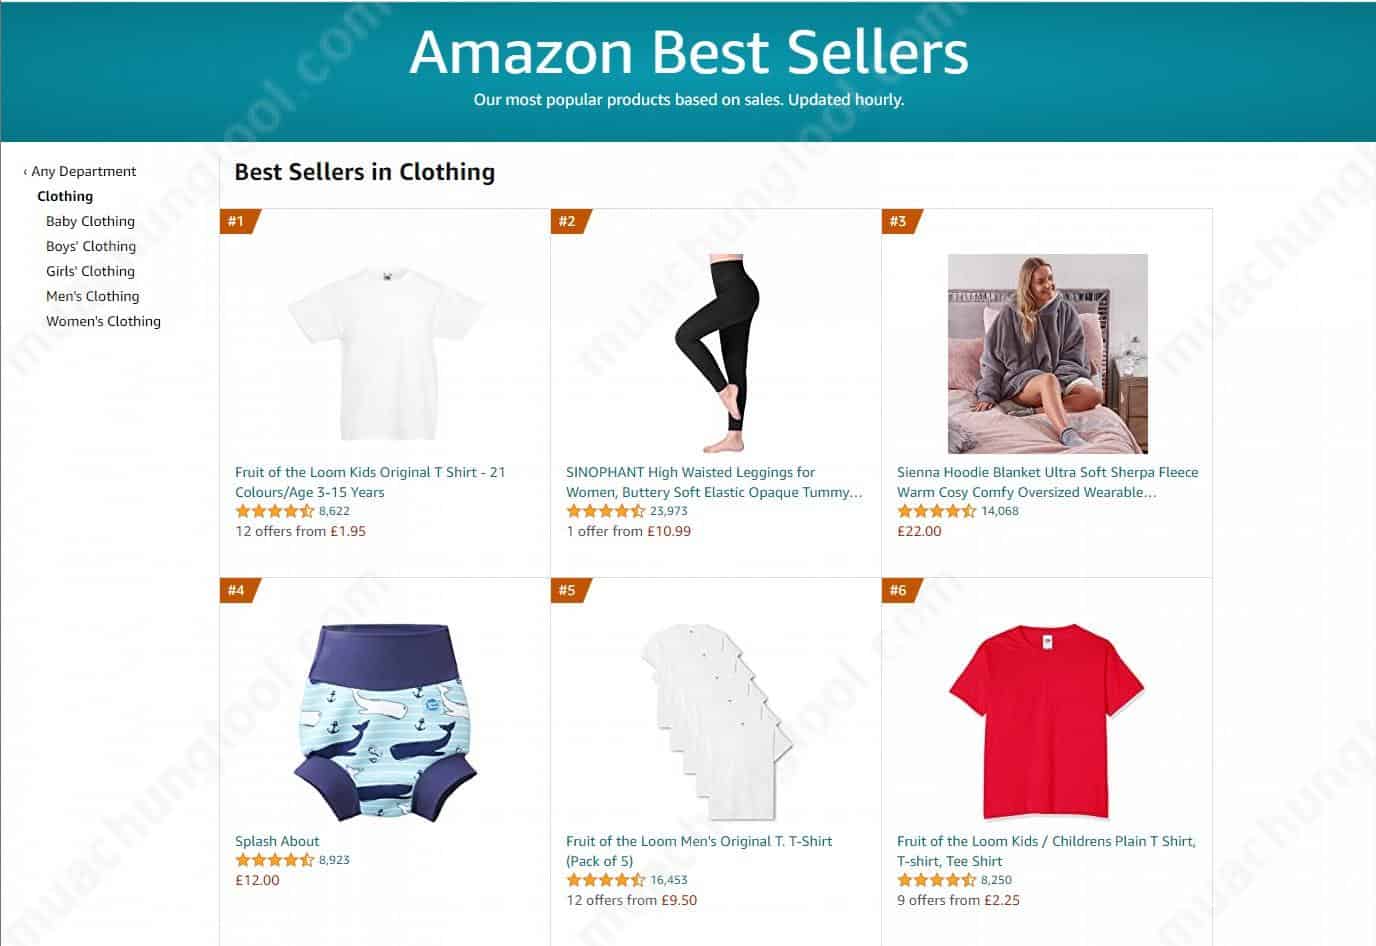 tăng doanh số bán hàng trên Amazon